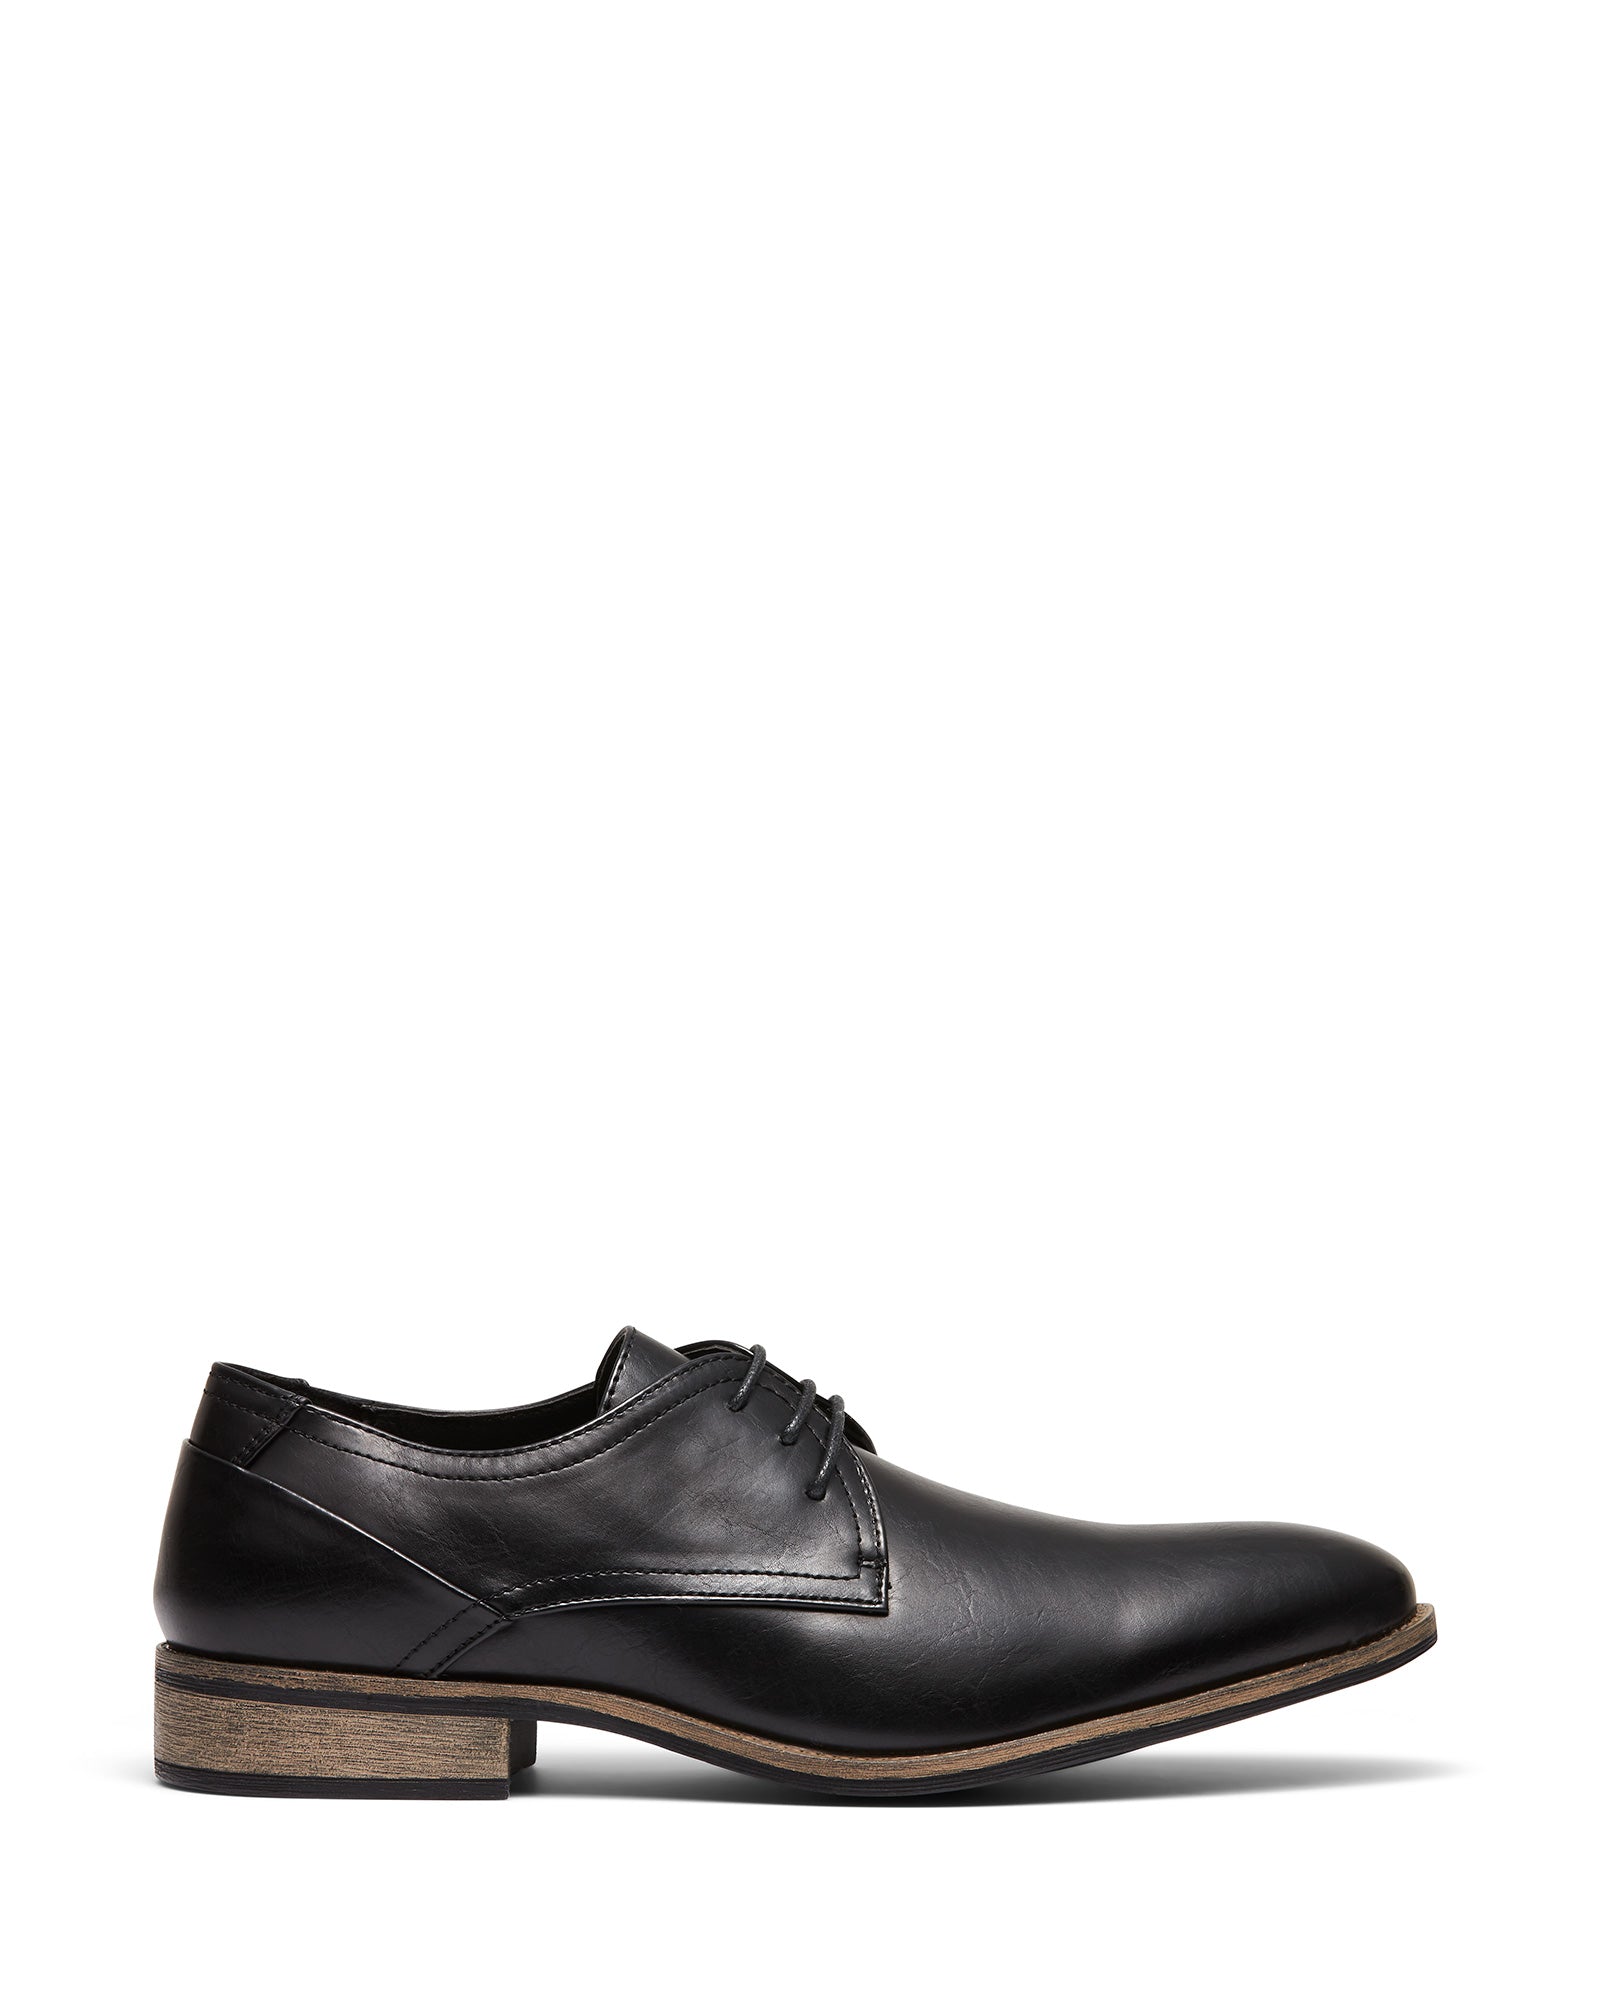 Uncut Shoes Rhine Black | Men's Dress Shoe | Derby | Lace Up | Work